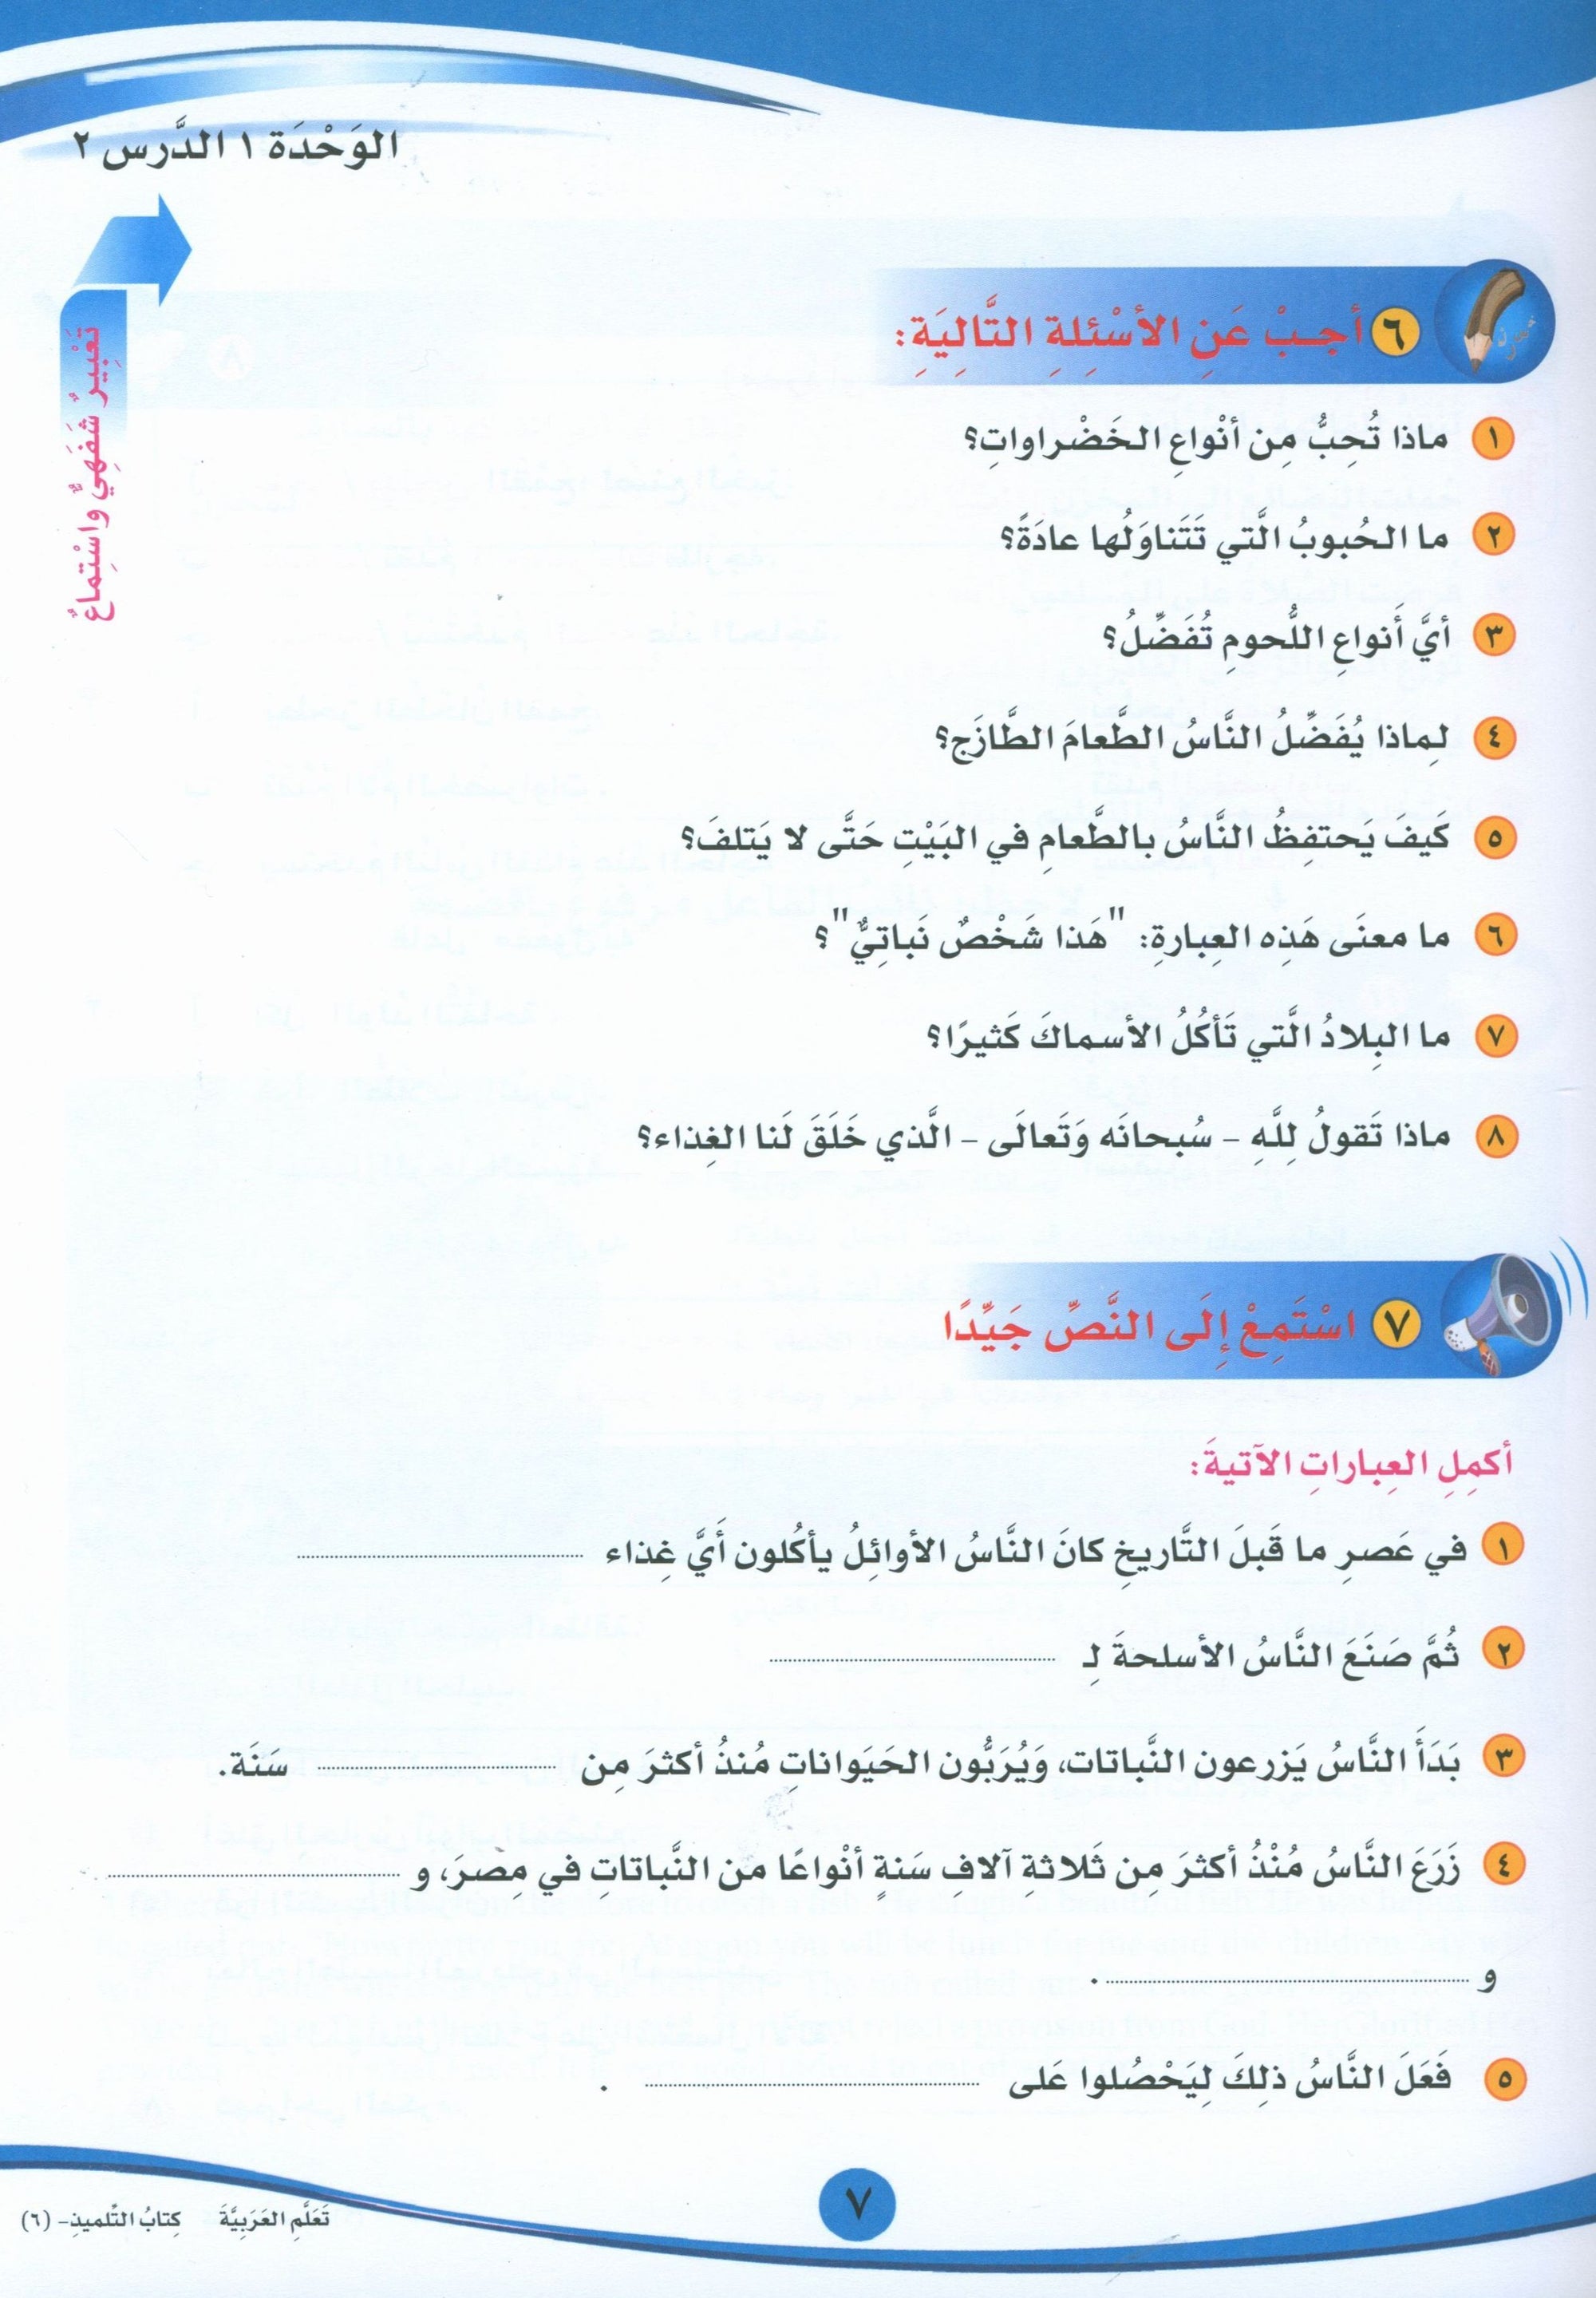 ICO Learn Arabic Textbook Level 6 Part 1 تعلم العربية كتاب التلميذ